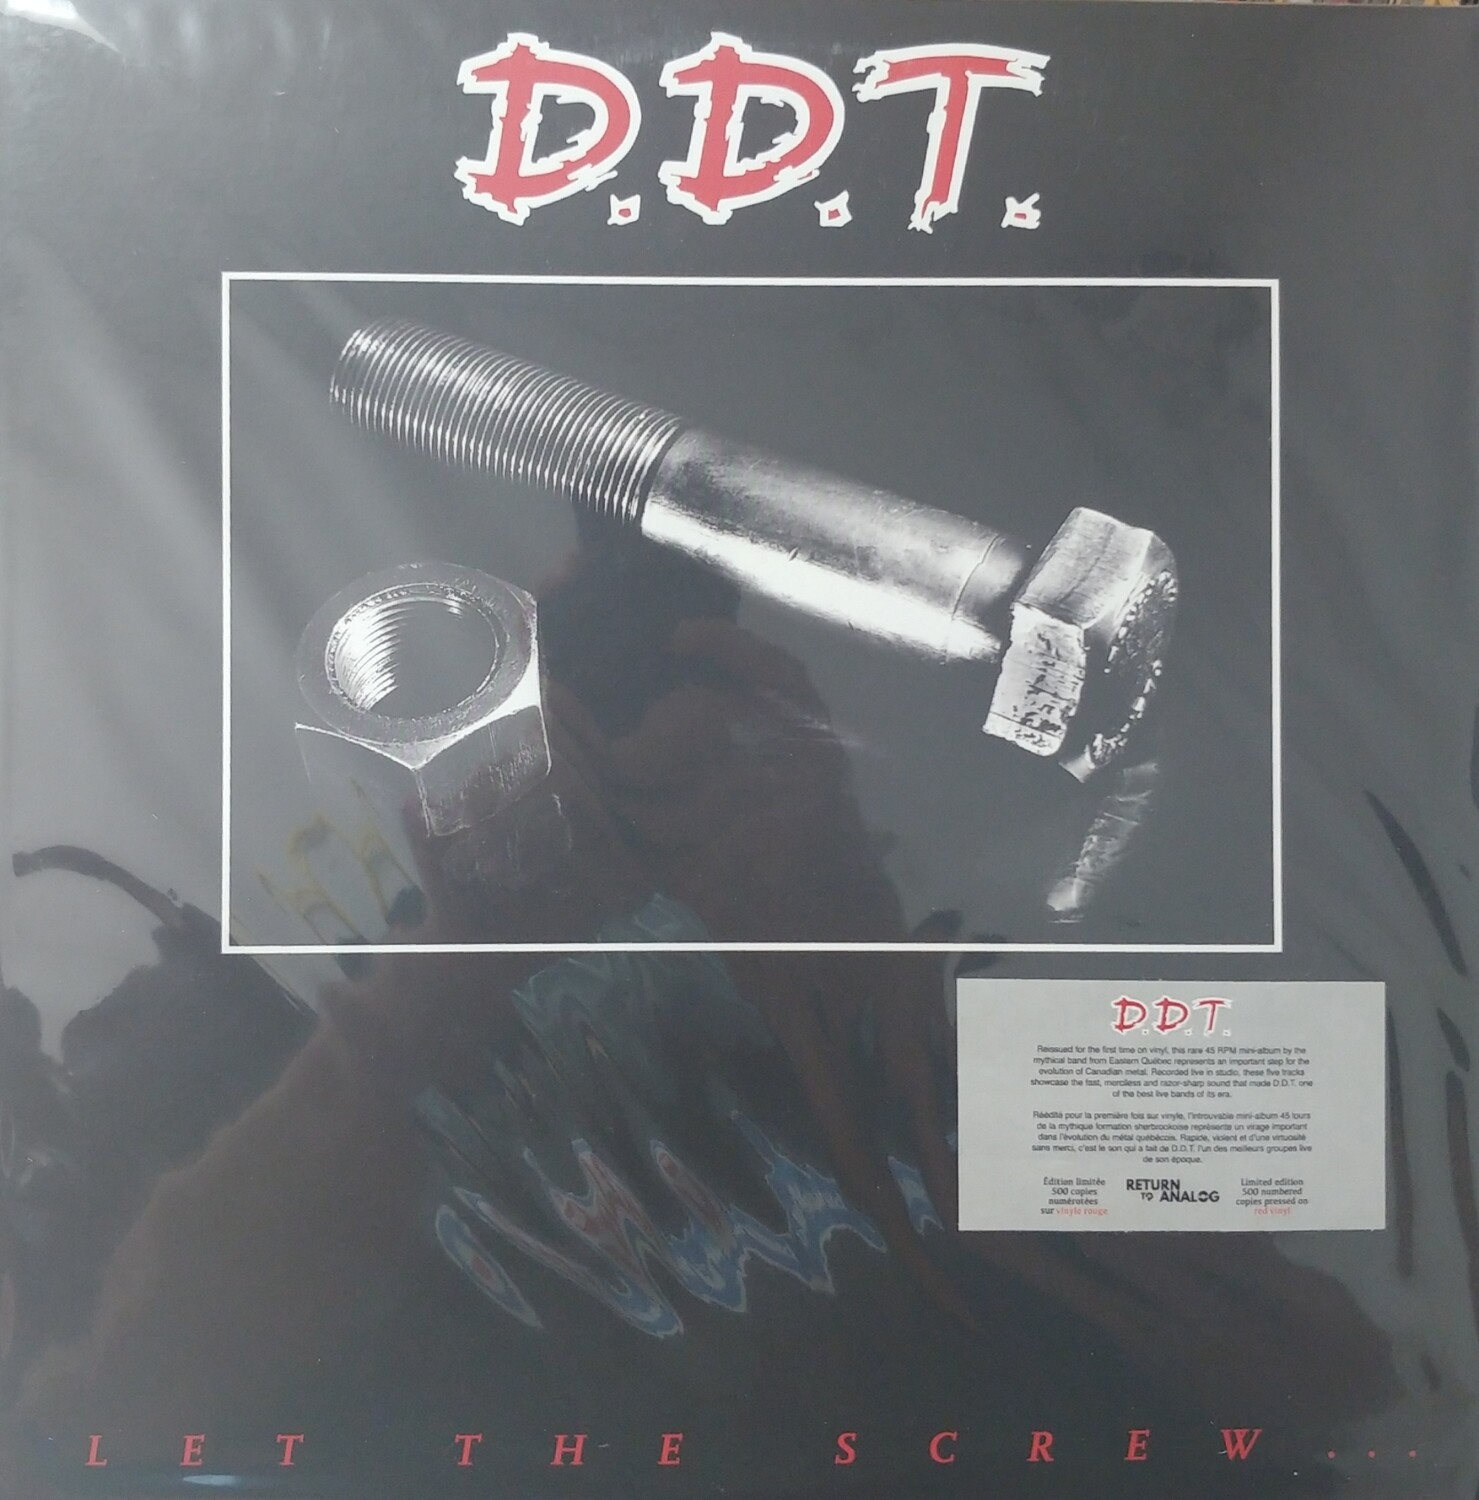 D.D.T. - Let the screw